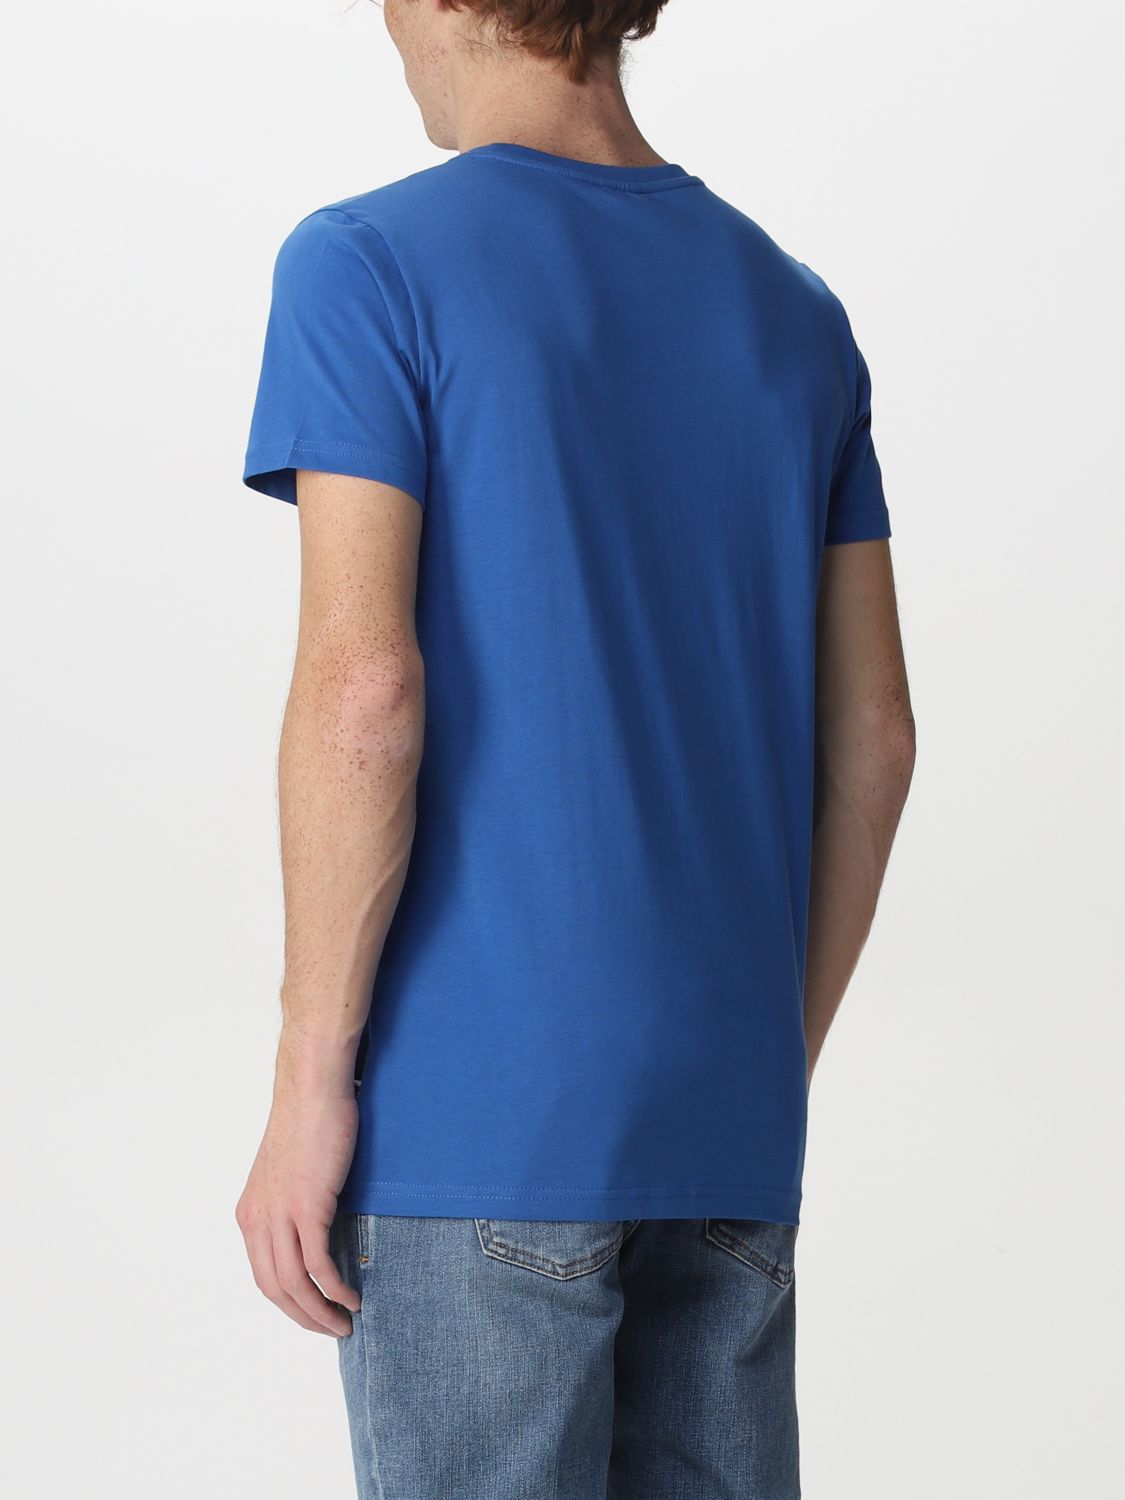 티셔츠 K-웨이: 티셔츠 K-Way 남성 로열 블루 2